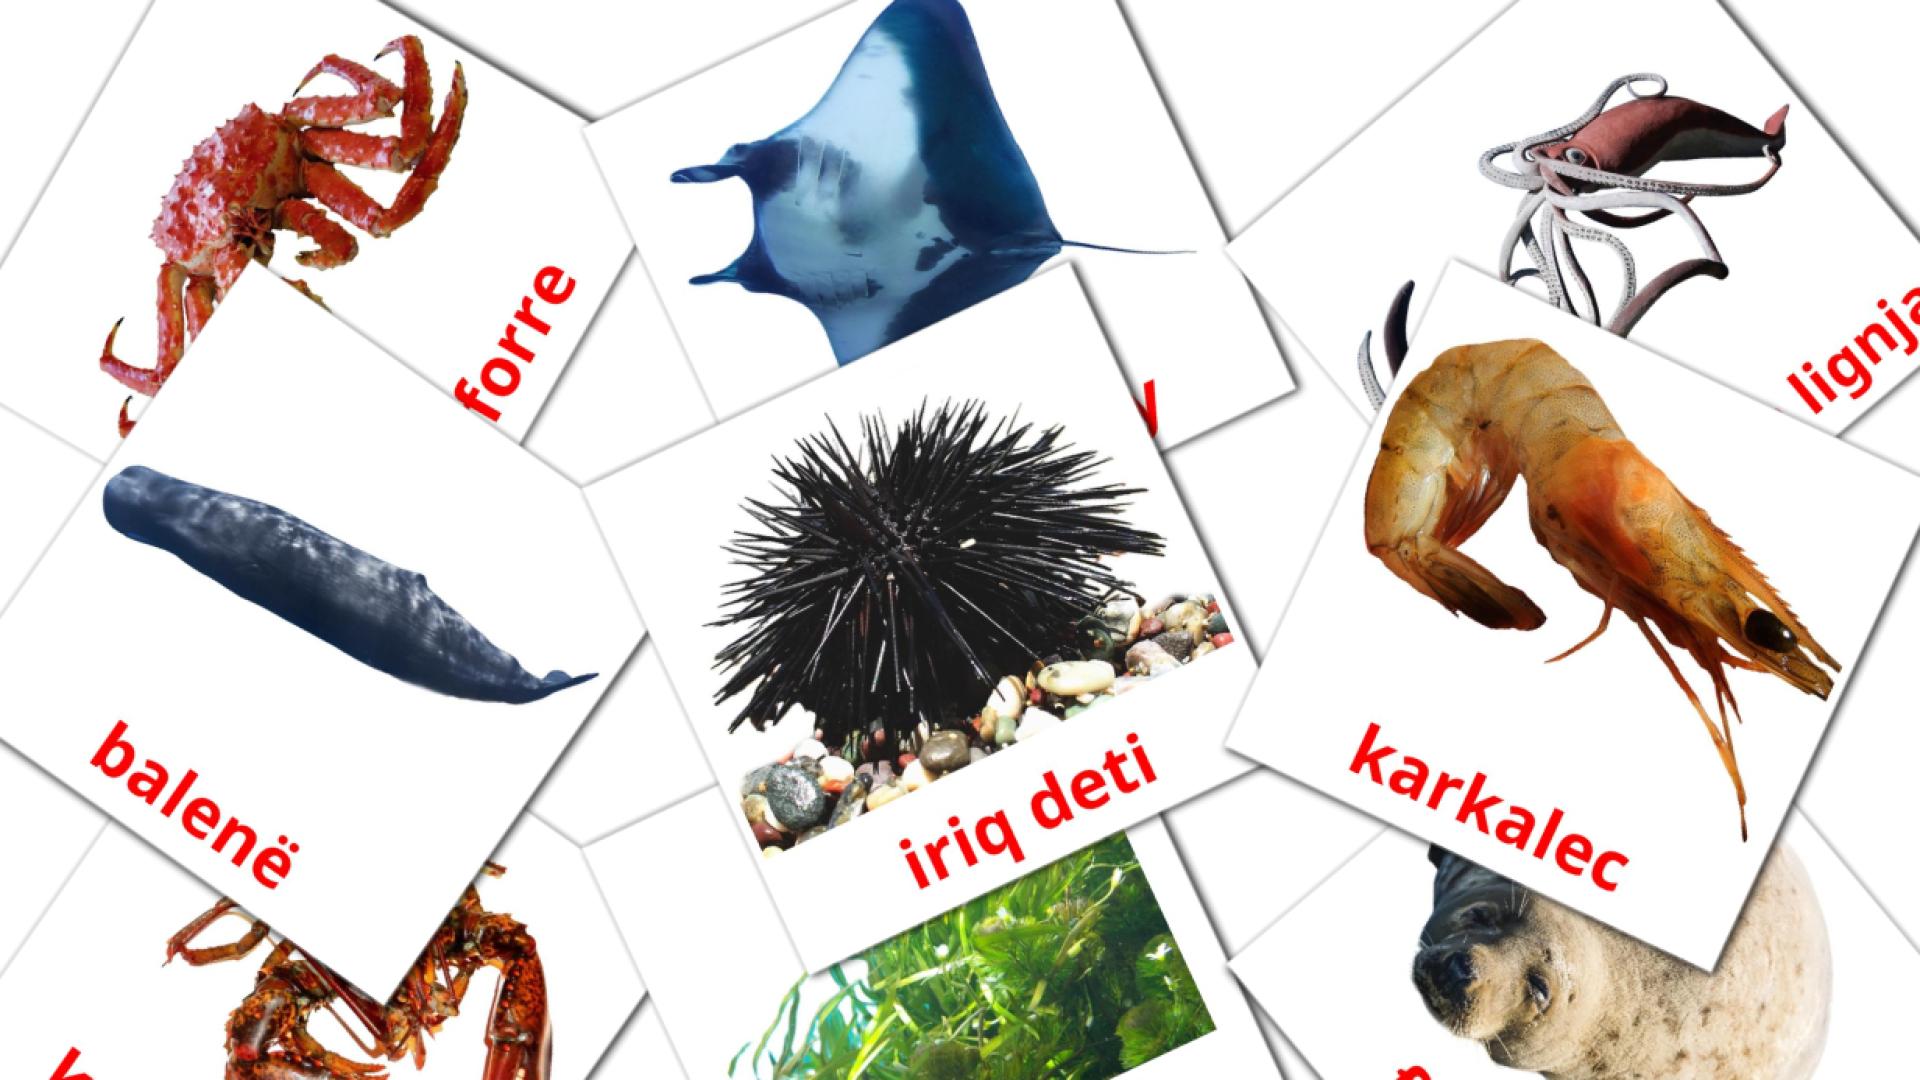 29 Bildkarten für Kafshët e detit